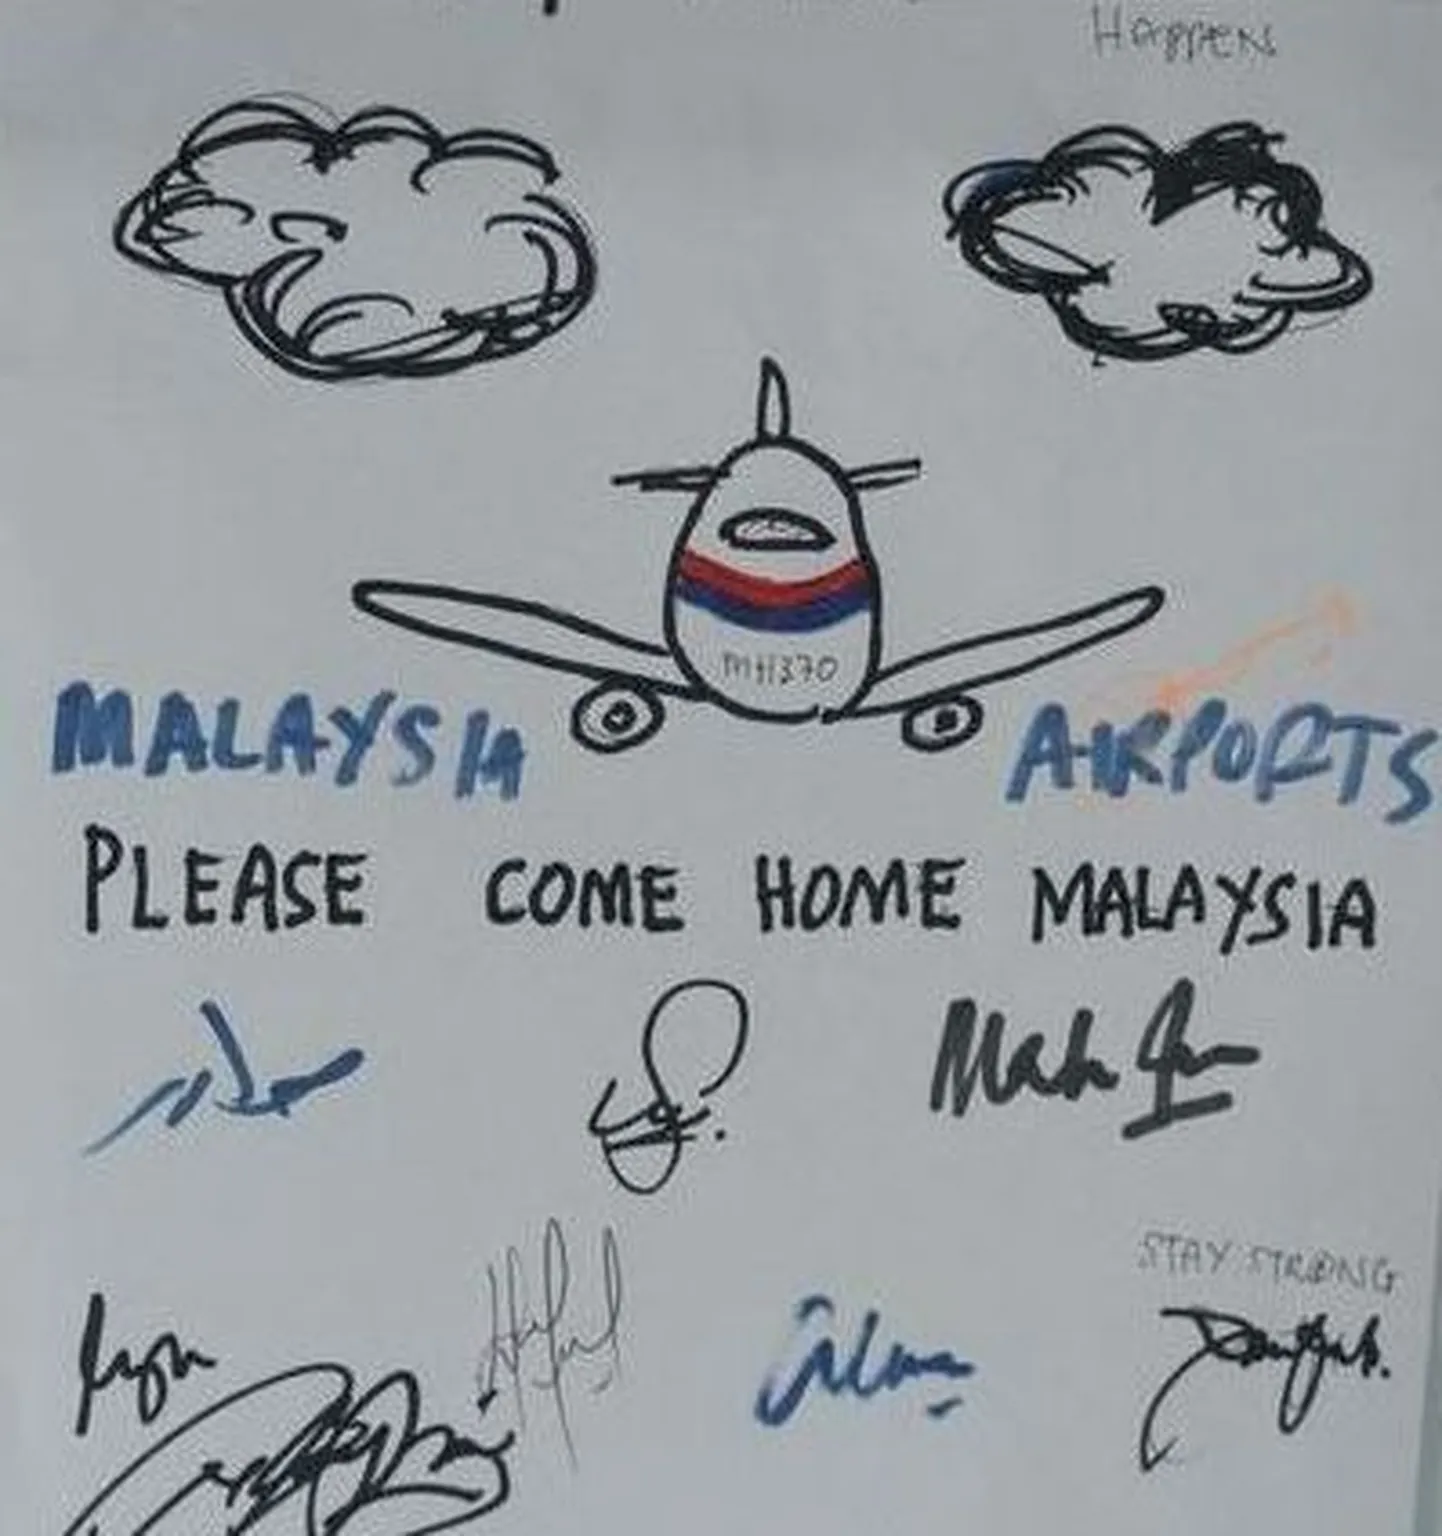 Malaysia Airways kadunud lennukit ja reisijaid oodatakse koju